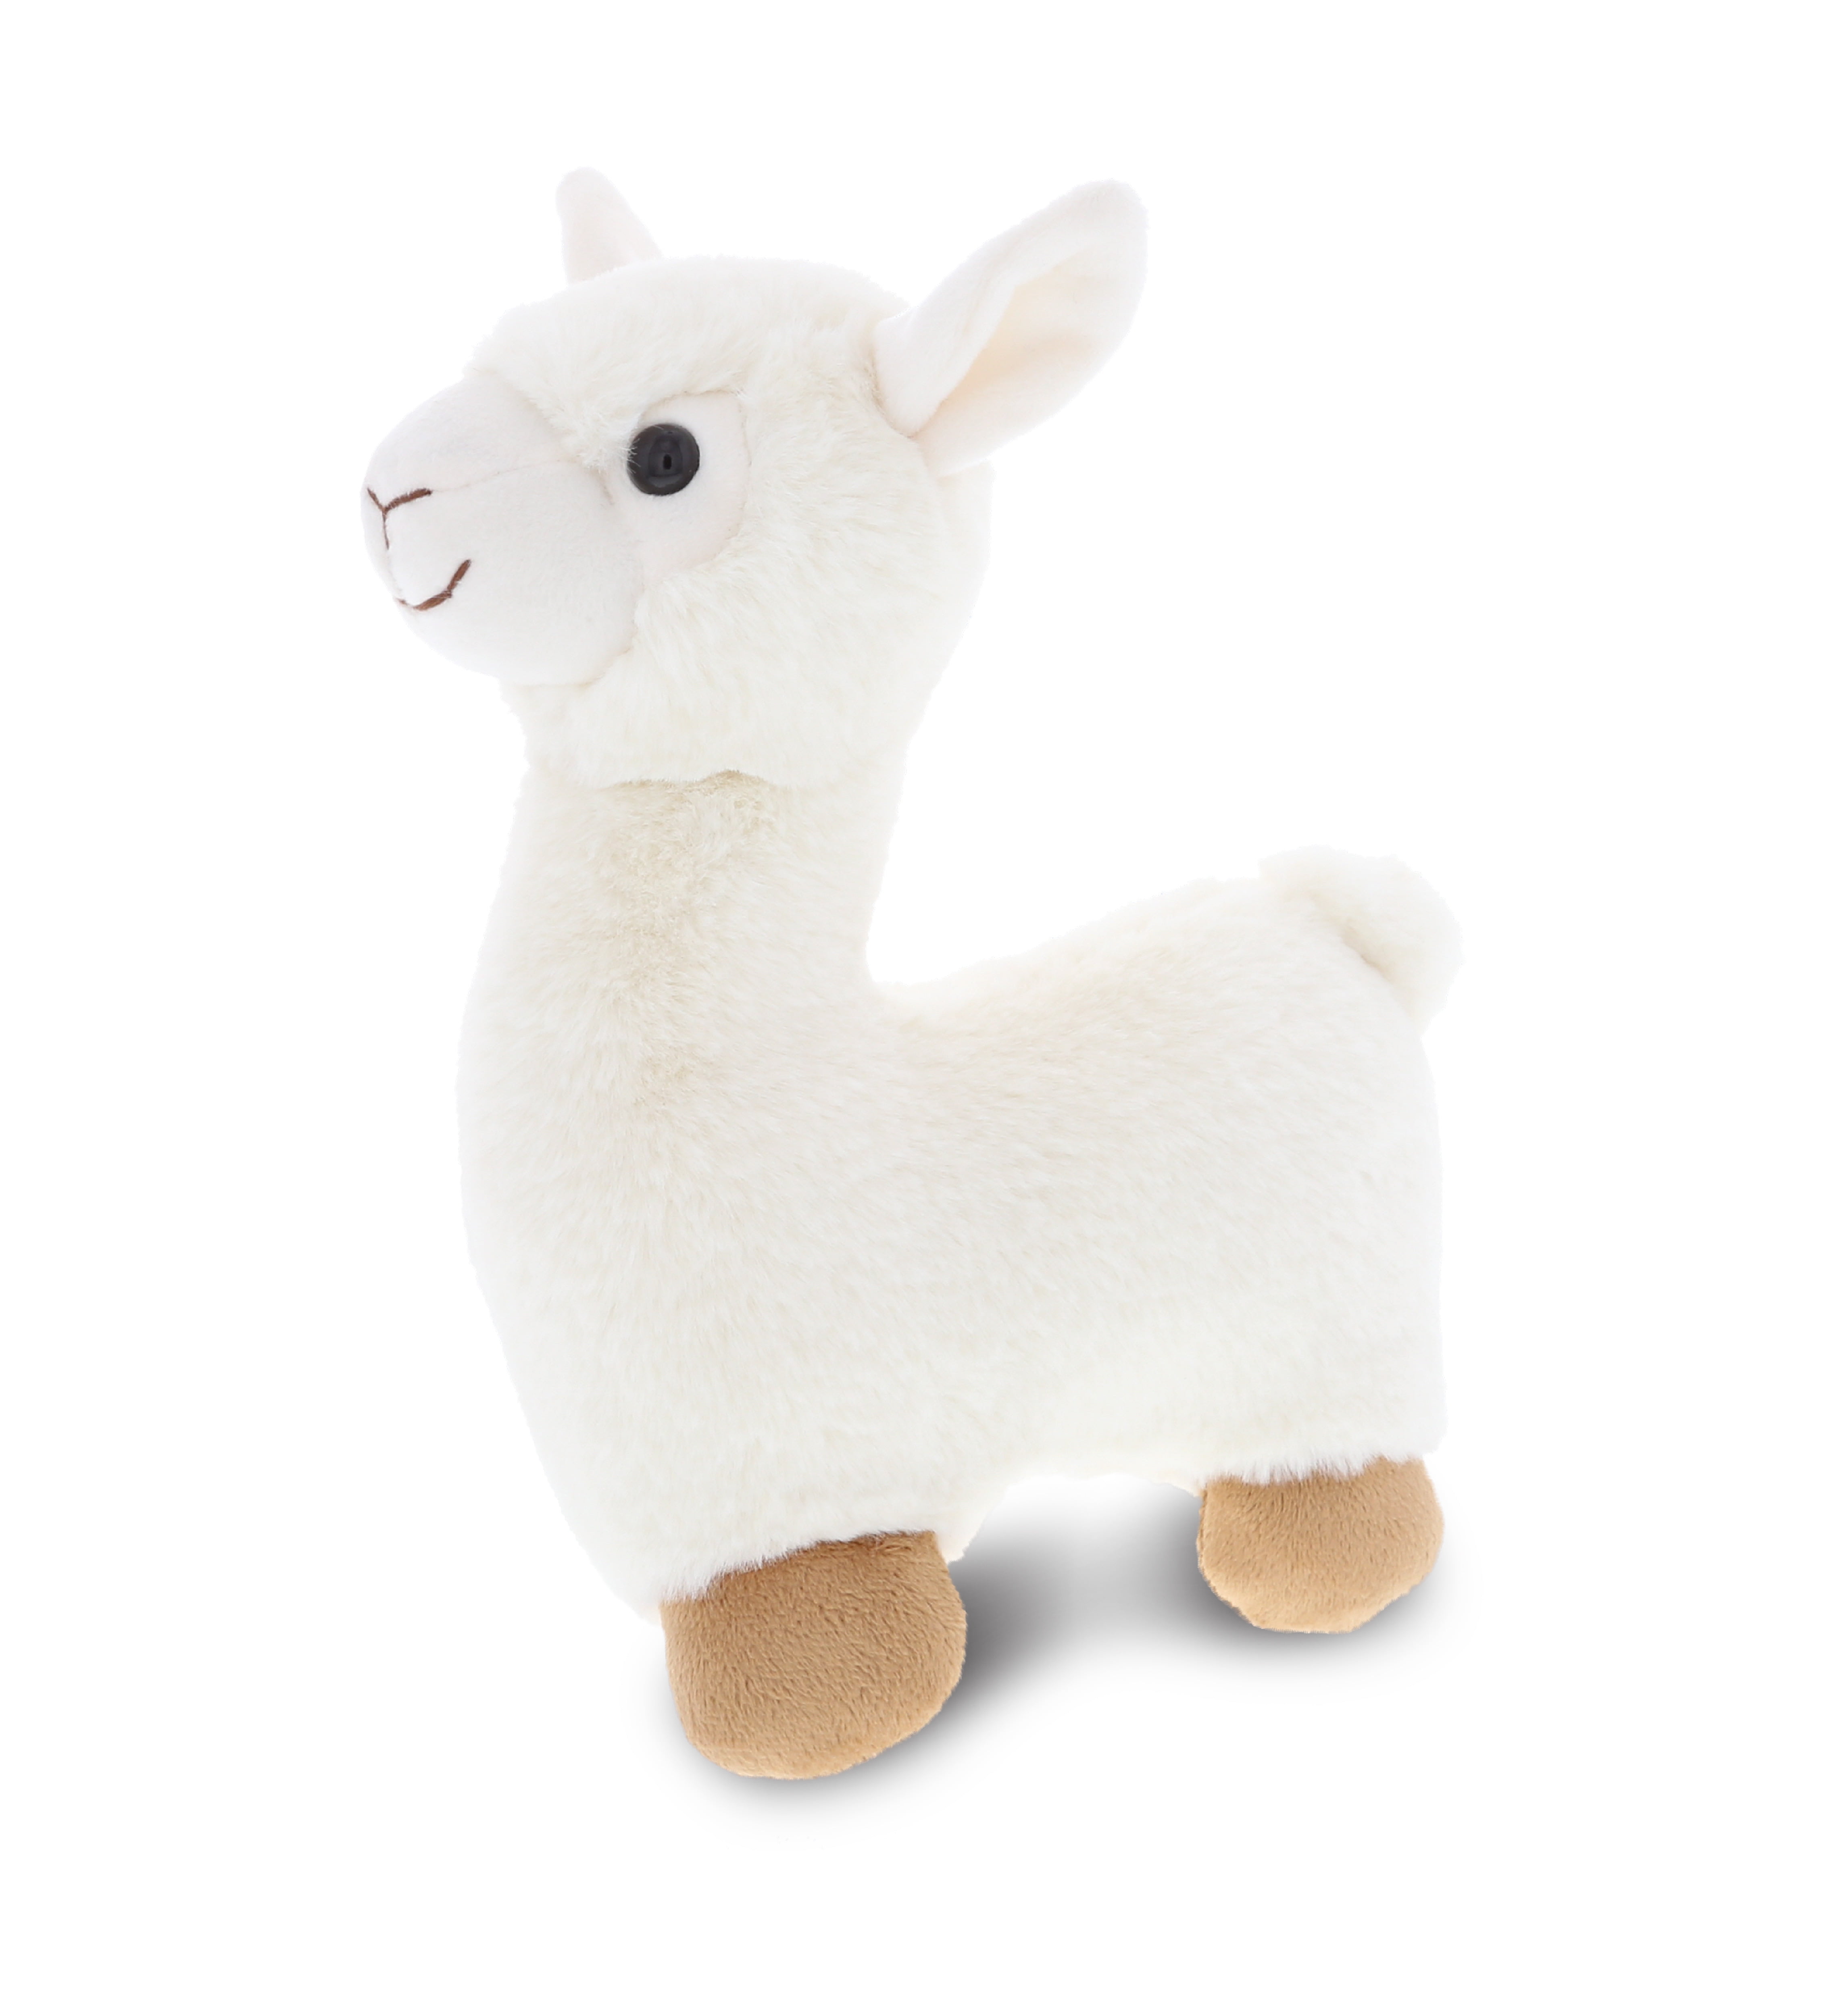 Soft Rainbow Alpaca Plush Stuffed Llama Toy Cute Animal Birthday Gift S 